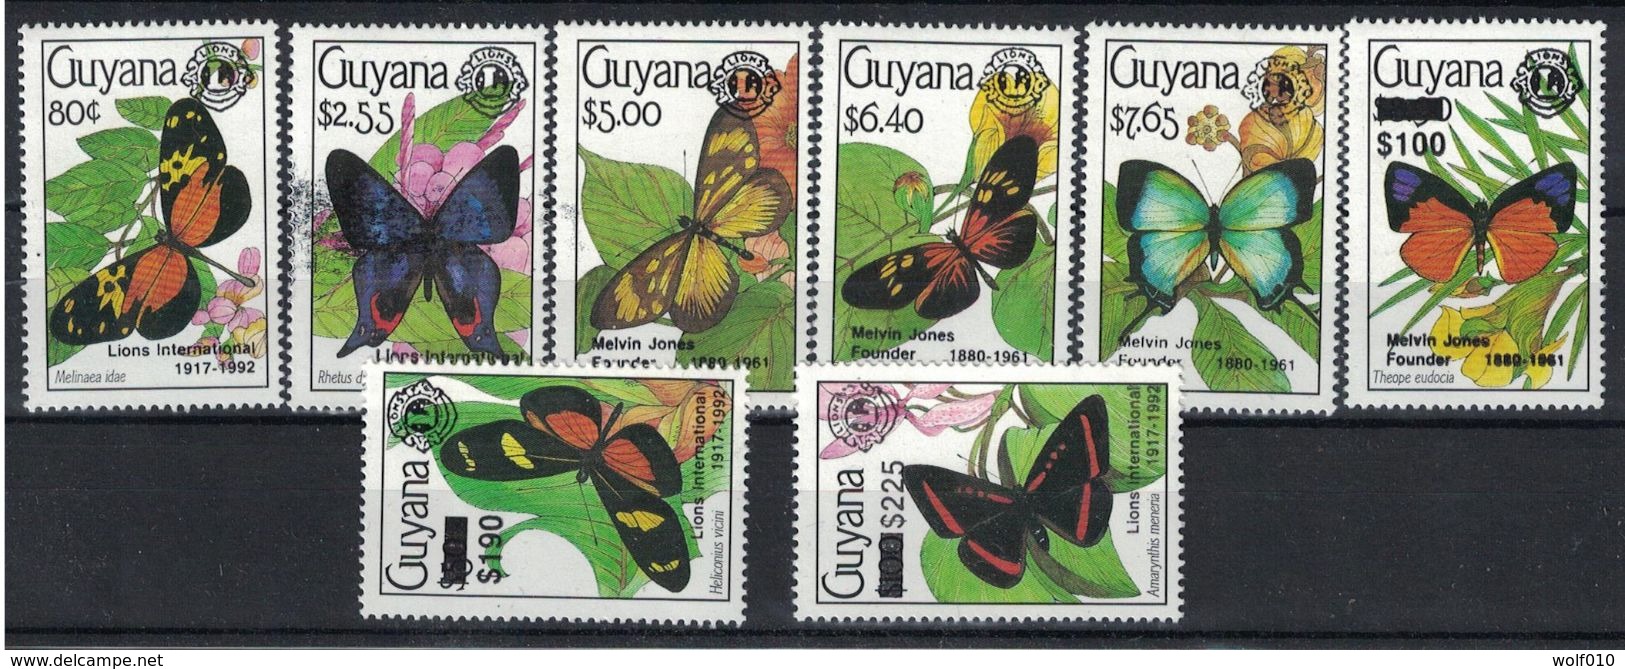 Guyana. 1992. Butterflies. Black Overprint . MNH Set. Scott Not Priced - Papillons